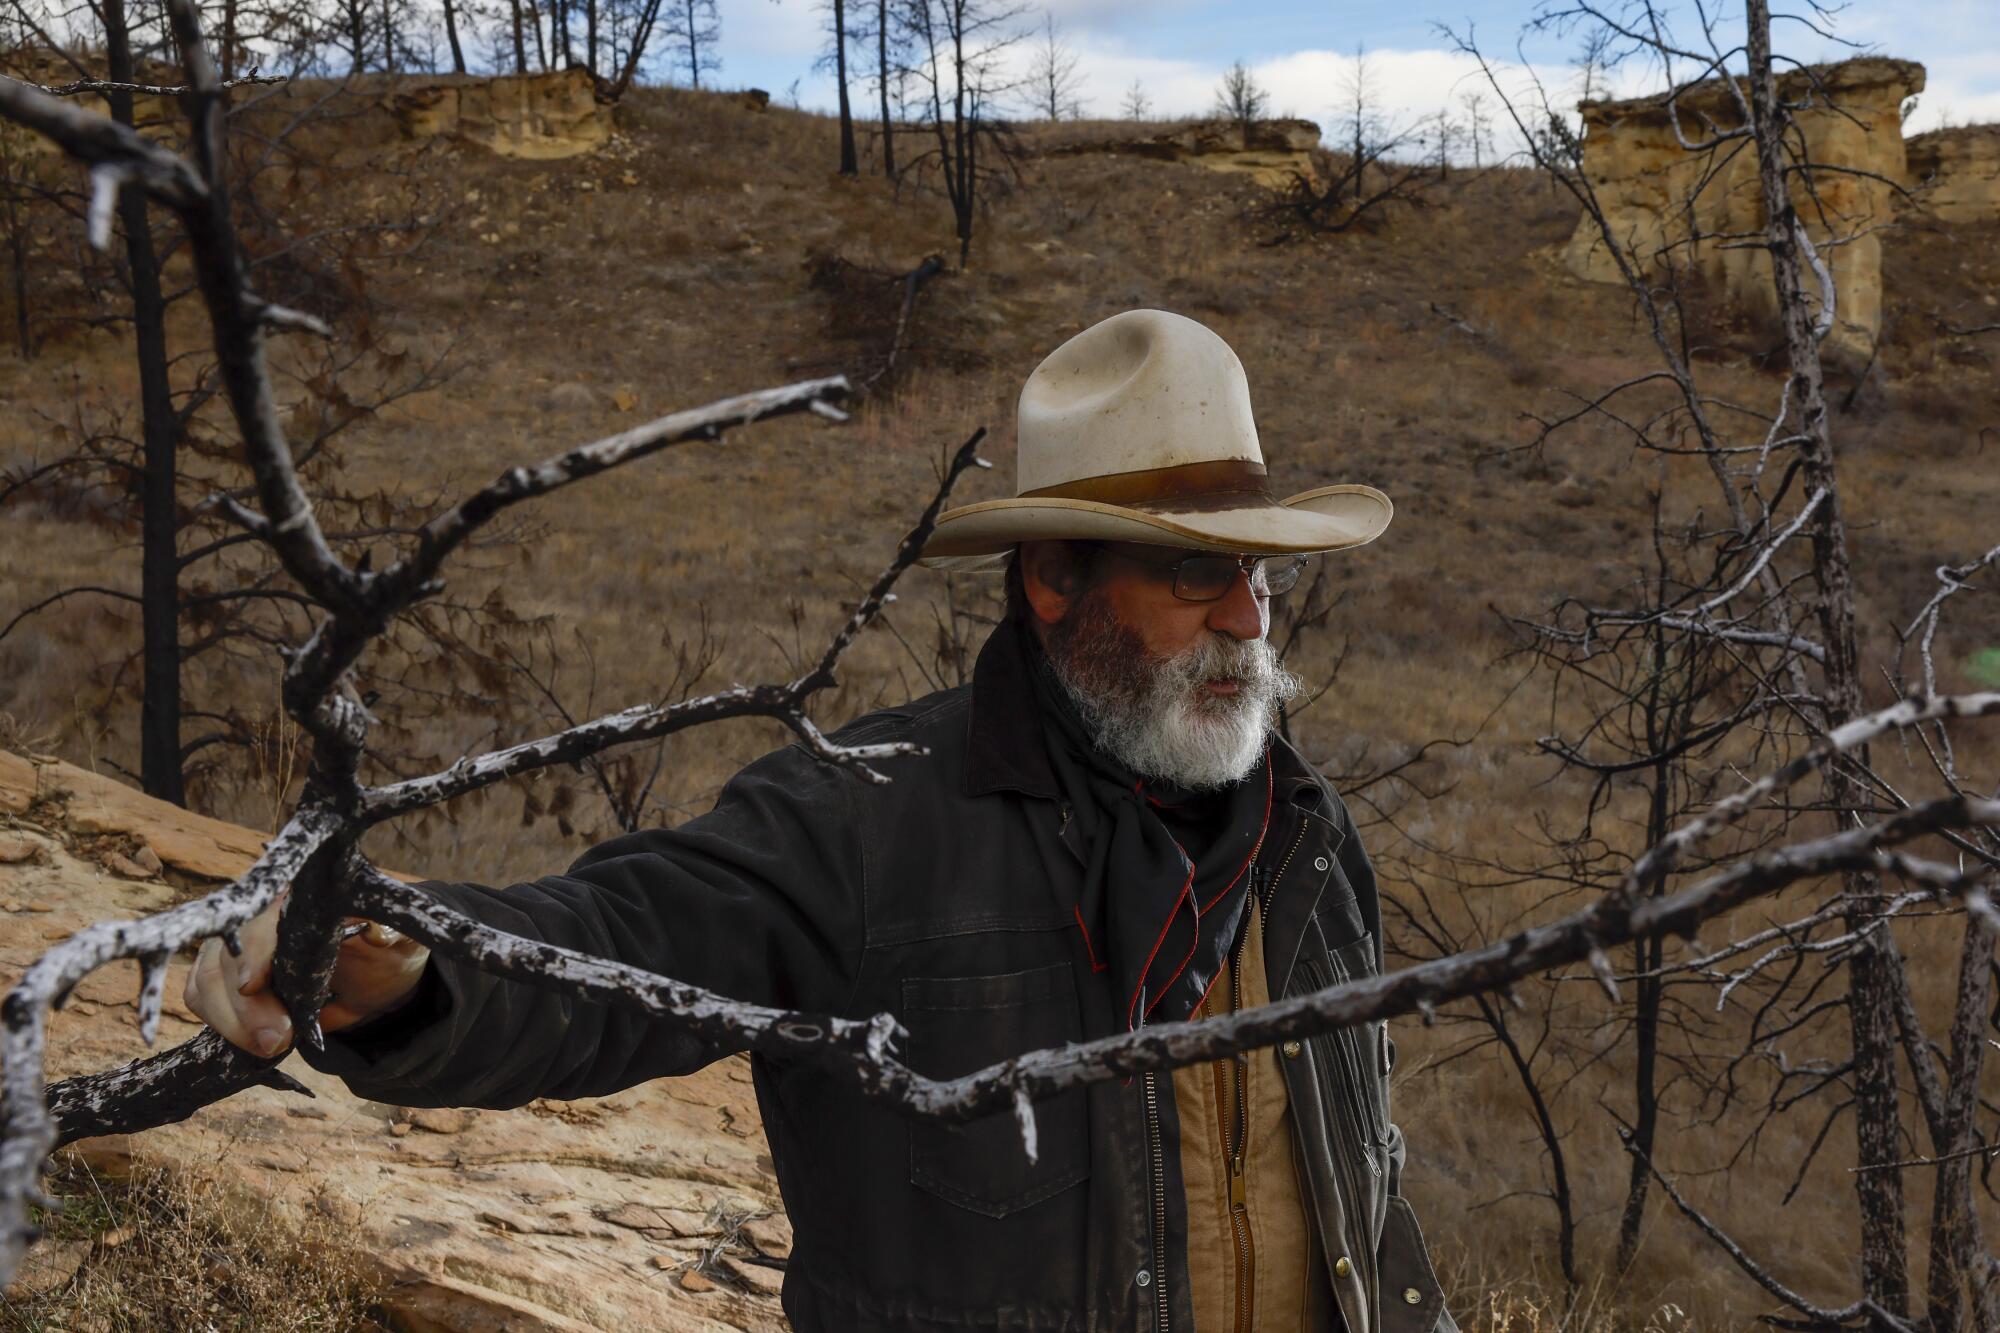 Rancher Clint McRae contemplates the environmental threats facing his family's land.